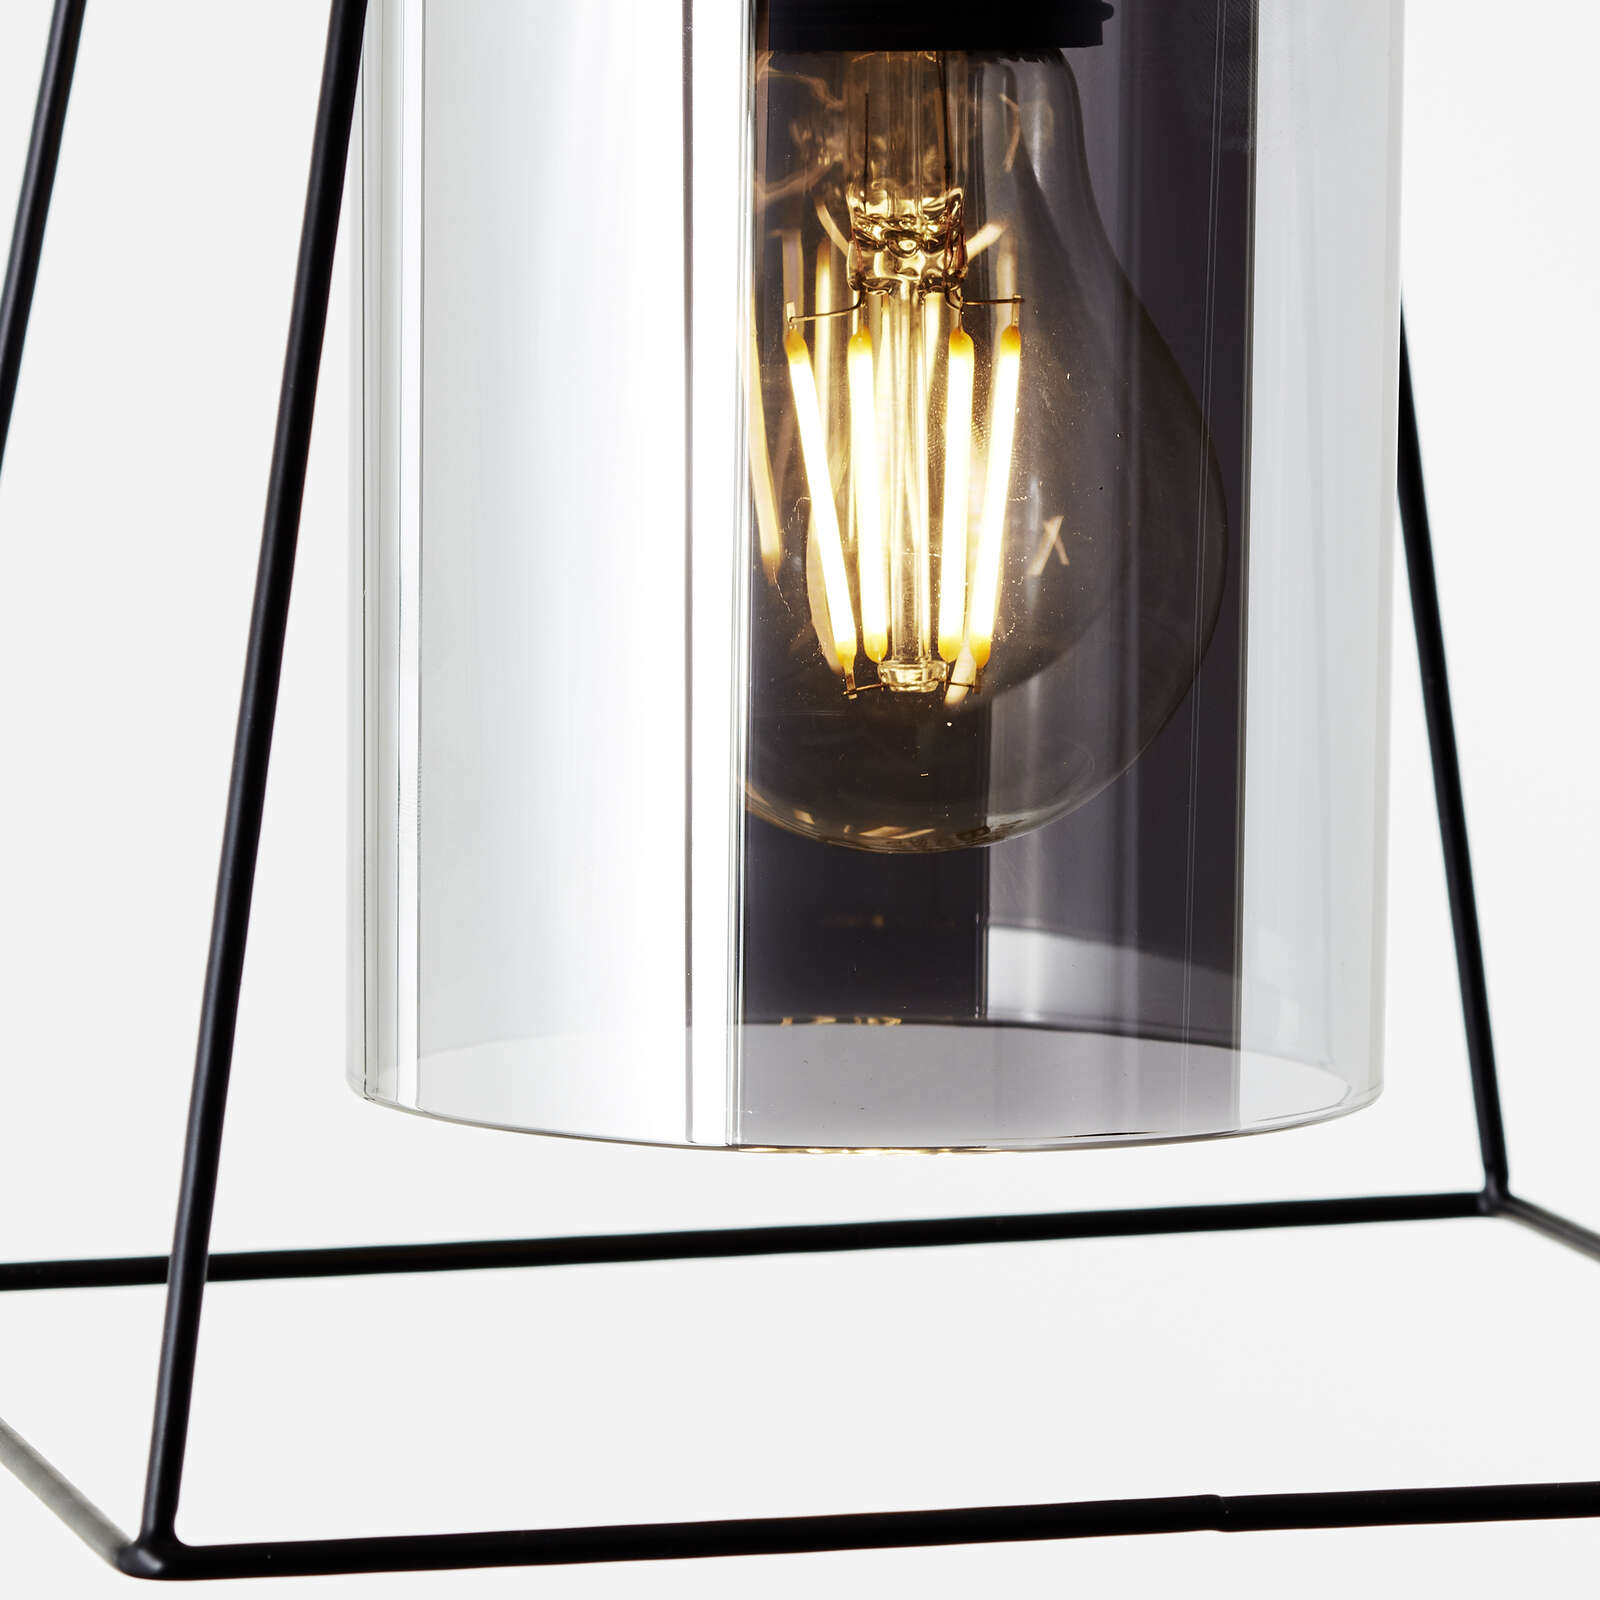             Lámpara colgante de cristal - Lennox 1 - Negro
        